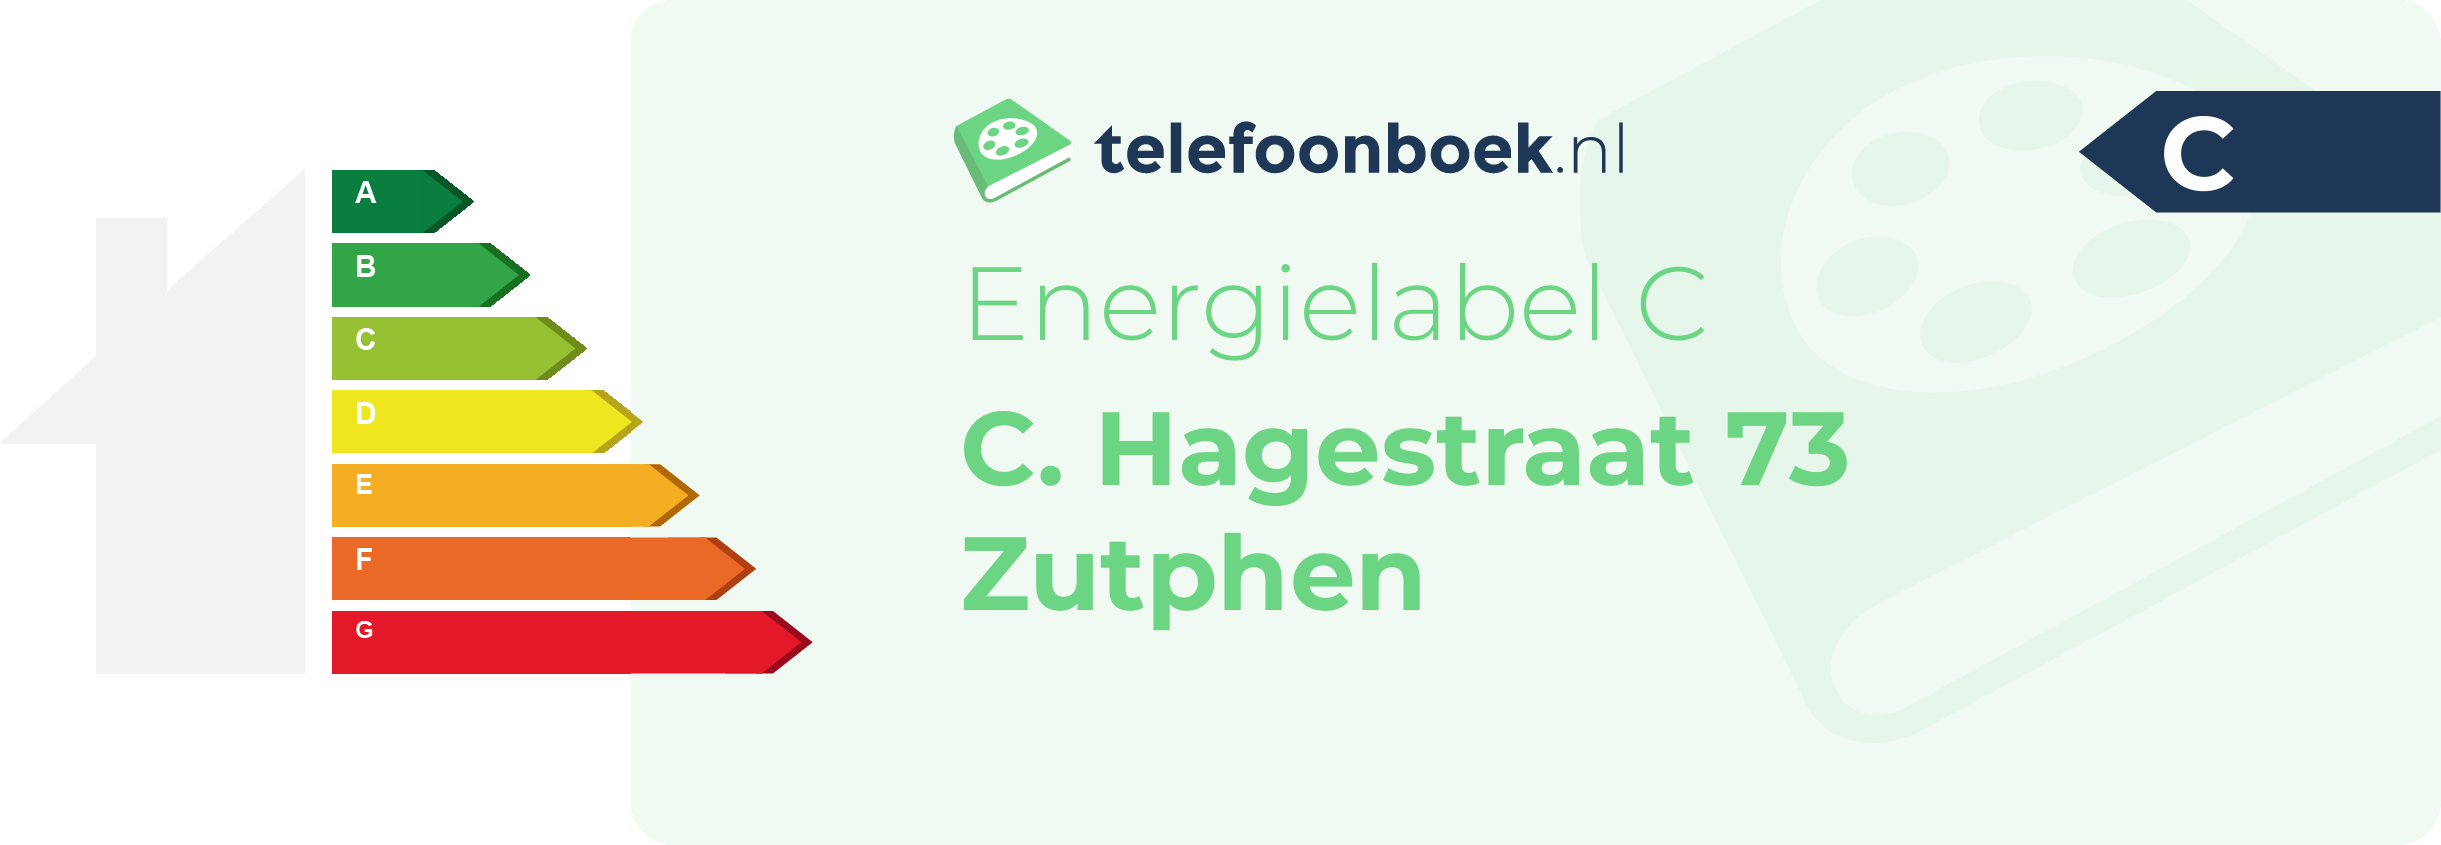 Energielabel C. Hagestraat 73 Zutphen